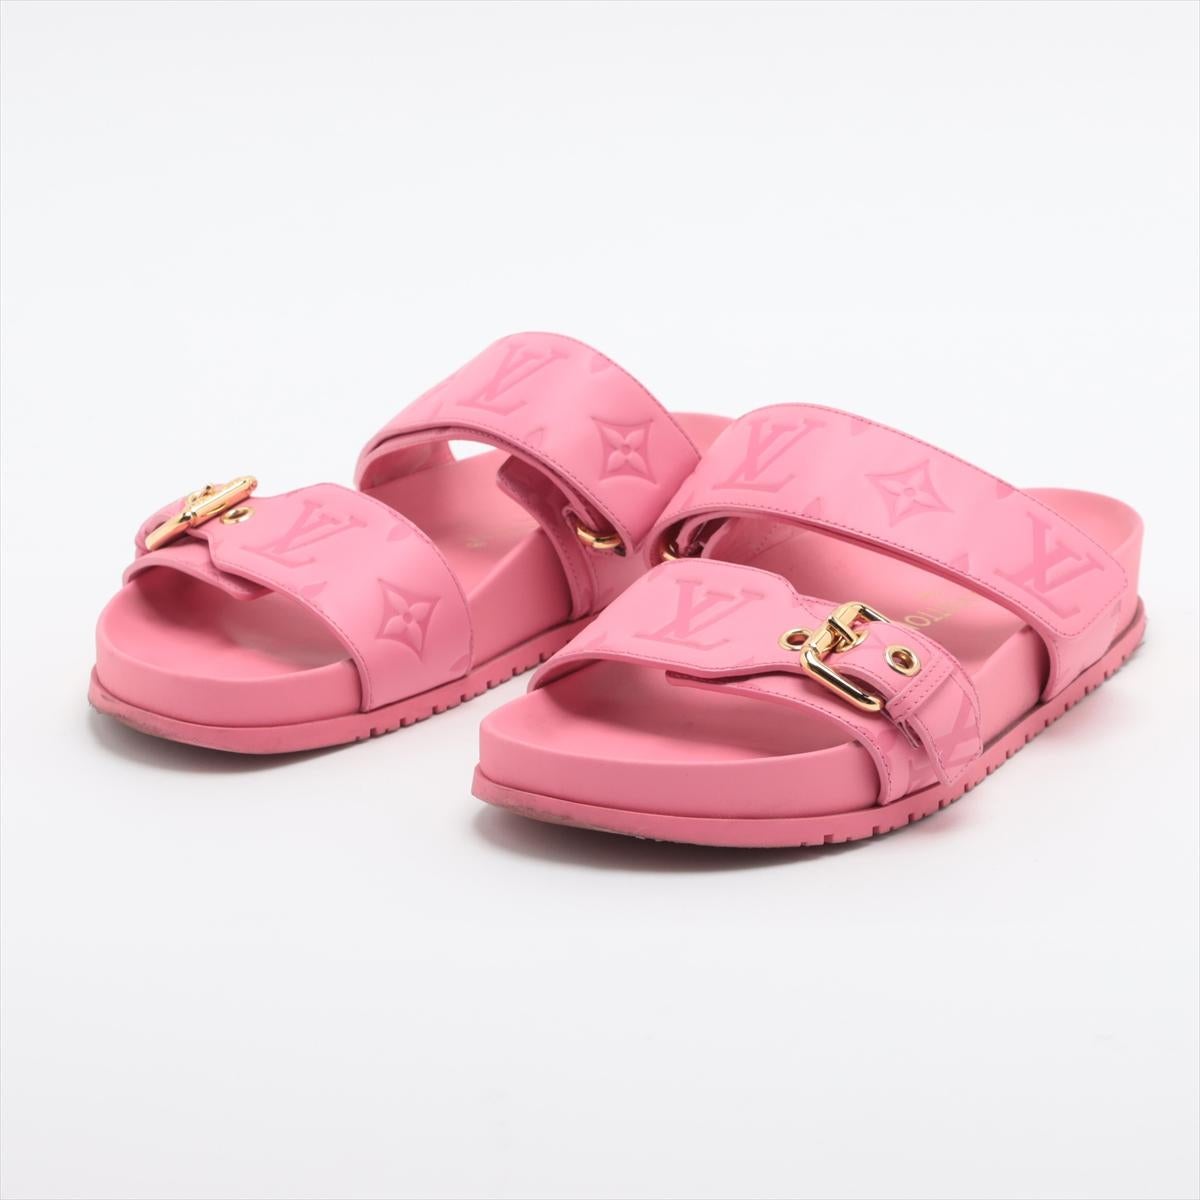 Le modèle Louis Vuitton Bom Dia Flat Comfort Mule en rose est une option de chaussure élégante et confortable qui incarne l'engagement de la marque en matière de luxe et de design contemporain. Les mules plates offrent un mélange parfait de mode et